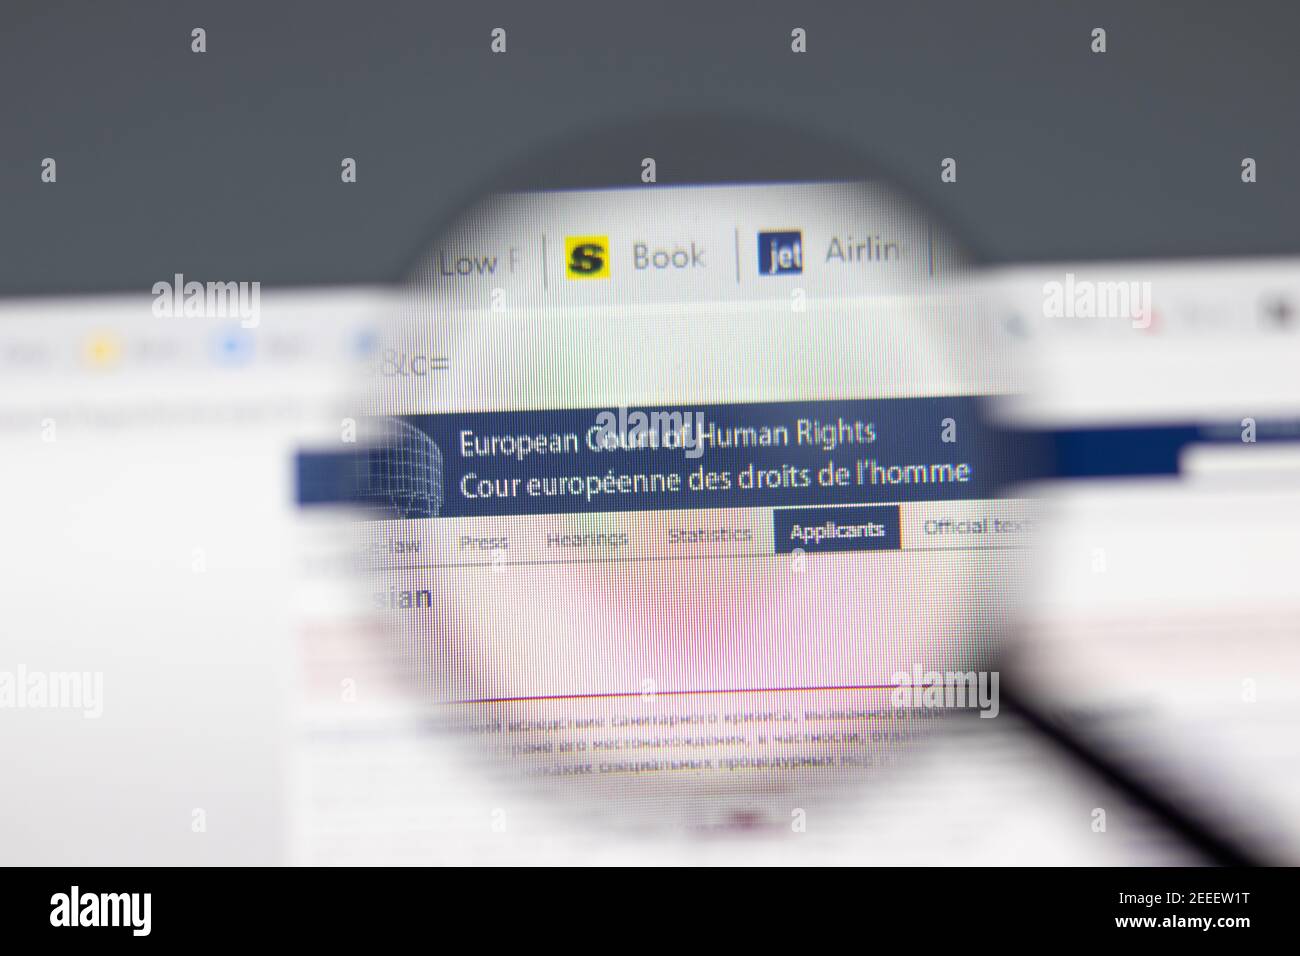 New York, USA - 15 febbraio 2021: Sito web della Corte europea dei diritti umani della CEDU in un browser con logo aziendale, editoriale illustrativo Foto Stock